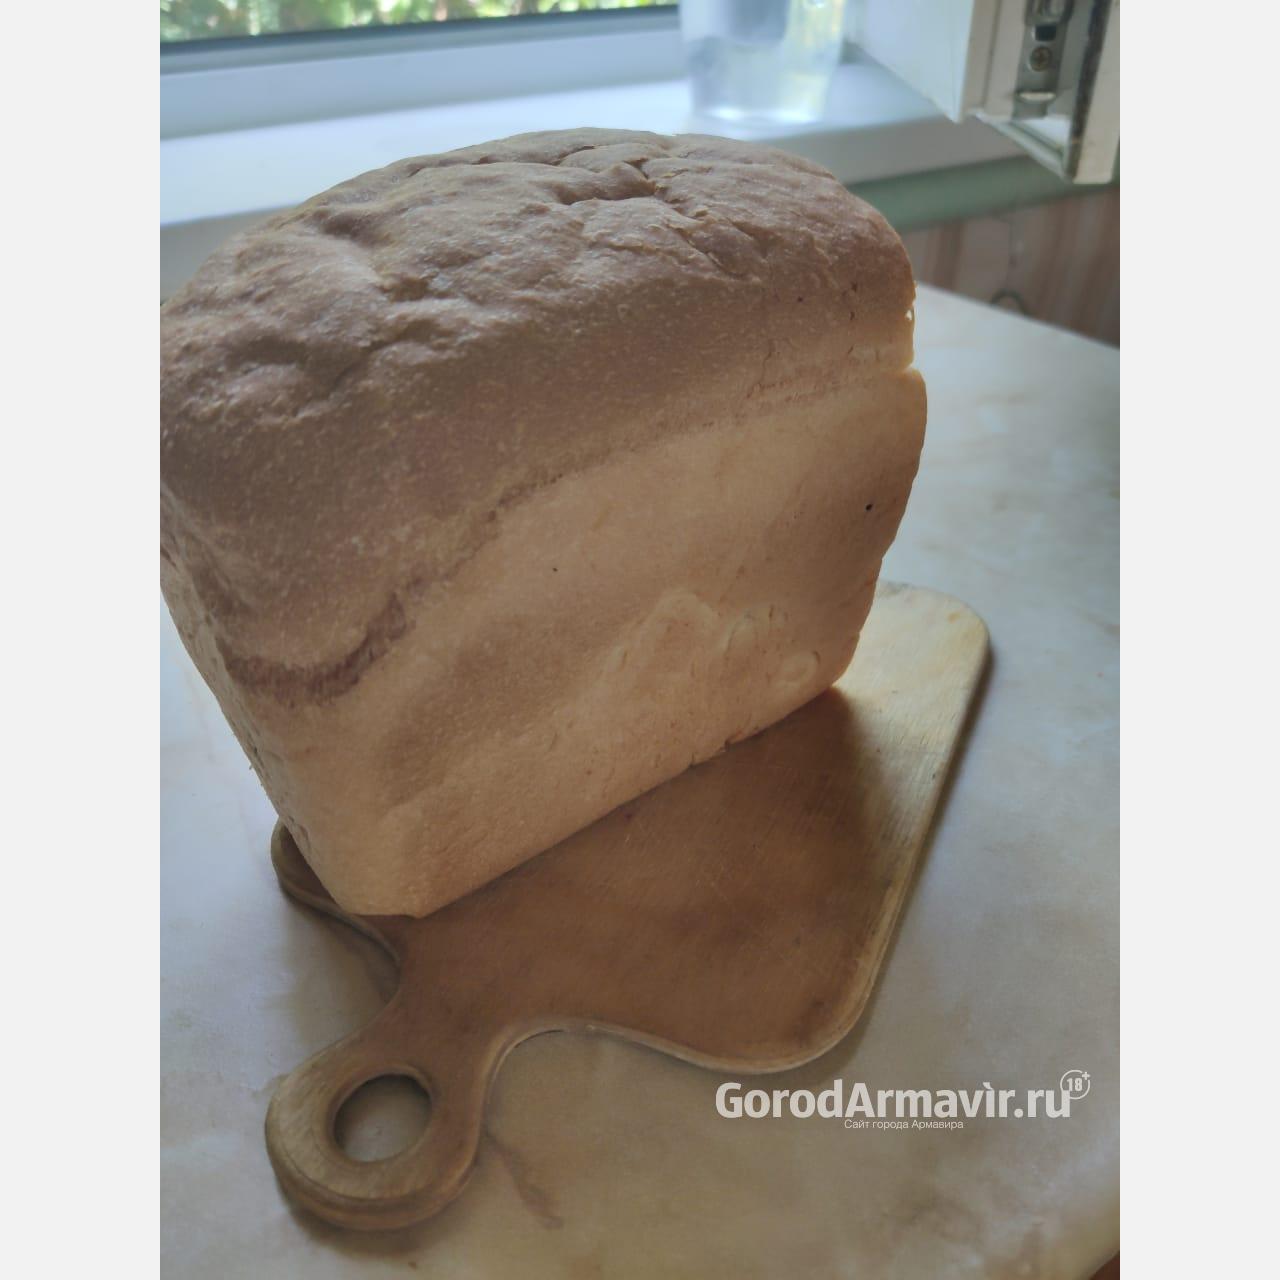 В Армавире начнет работу «горячая линия» по вопросам качества хлеба 